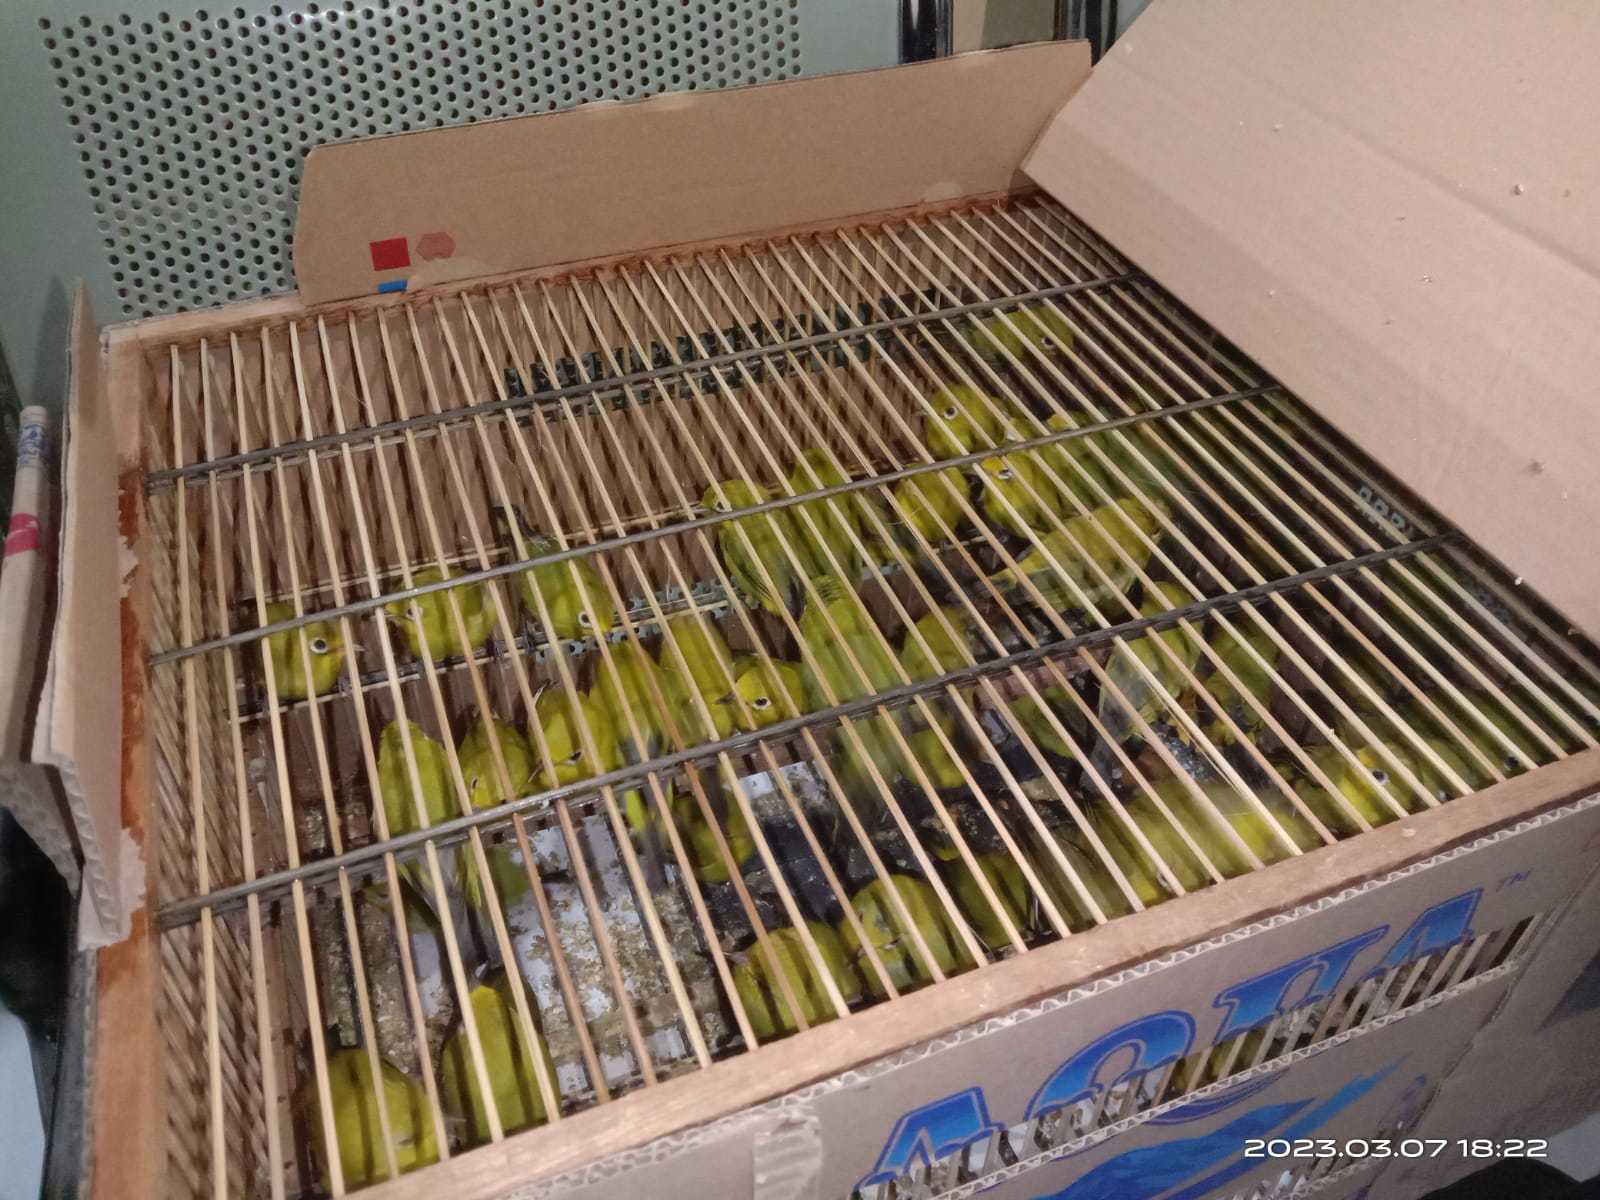 Sebanyak 64 ekor burung kacamata terdapat di dalam kardus yang akan diselundupkan menuju Kendari. | Foto: BKSDA Sulawesi Utara